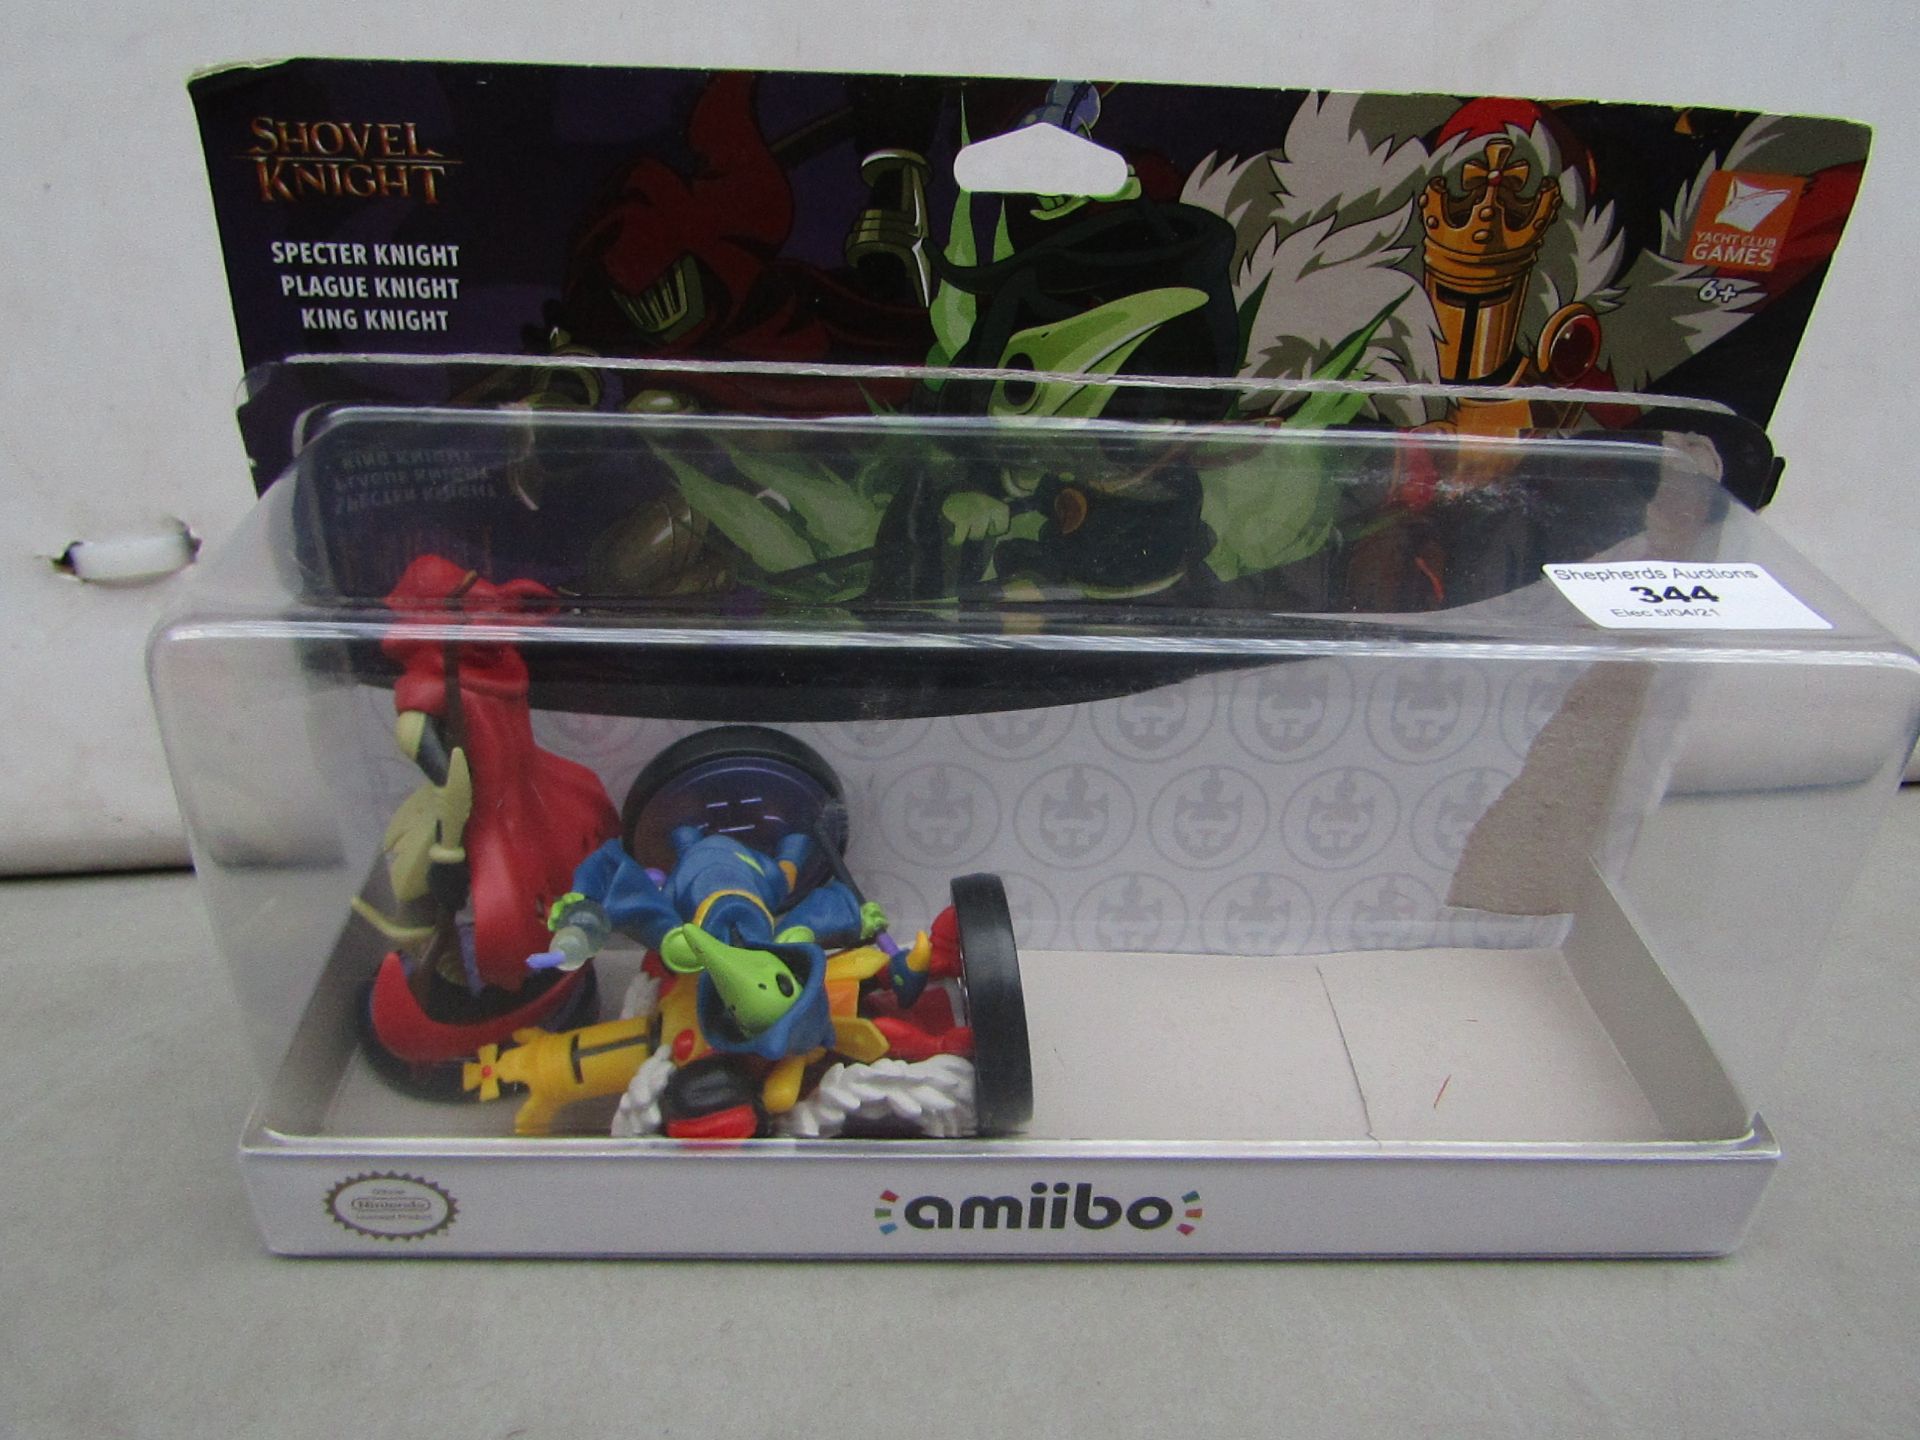 Nintendo amiibo Shovel Knight 3 character set, damged packaging#